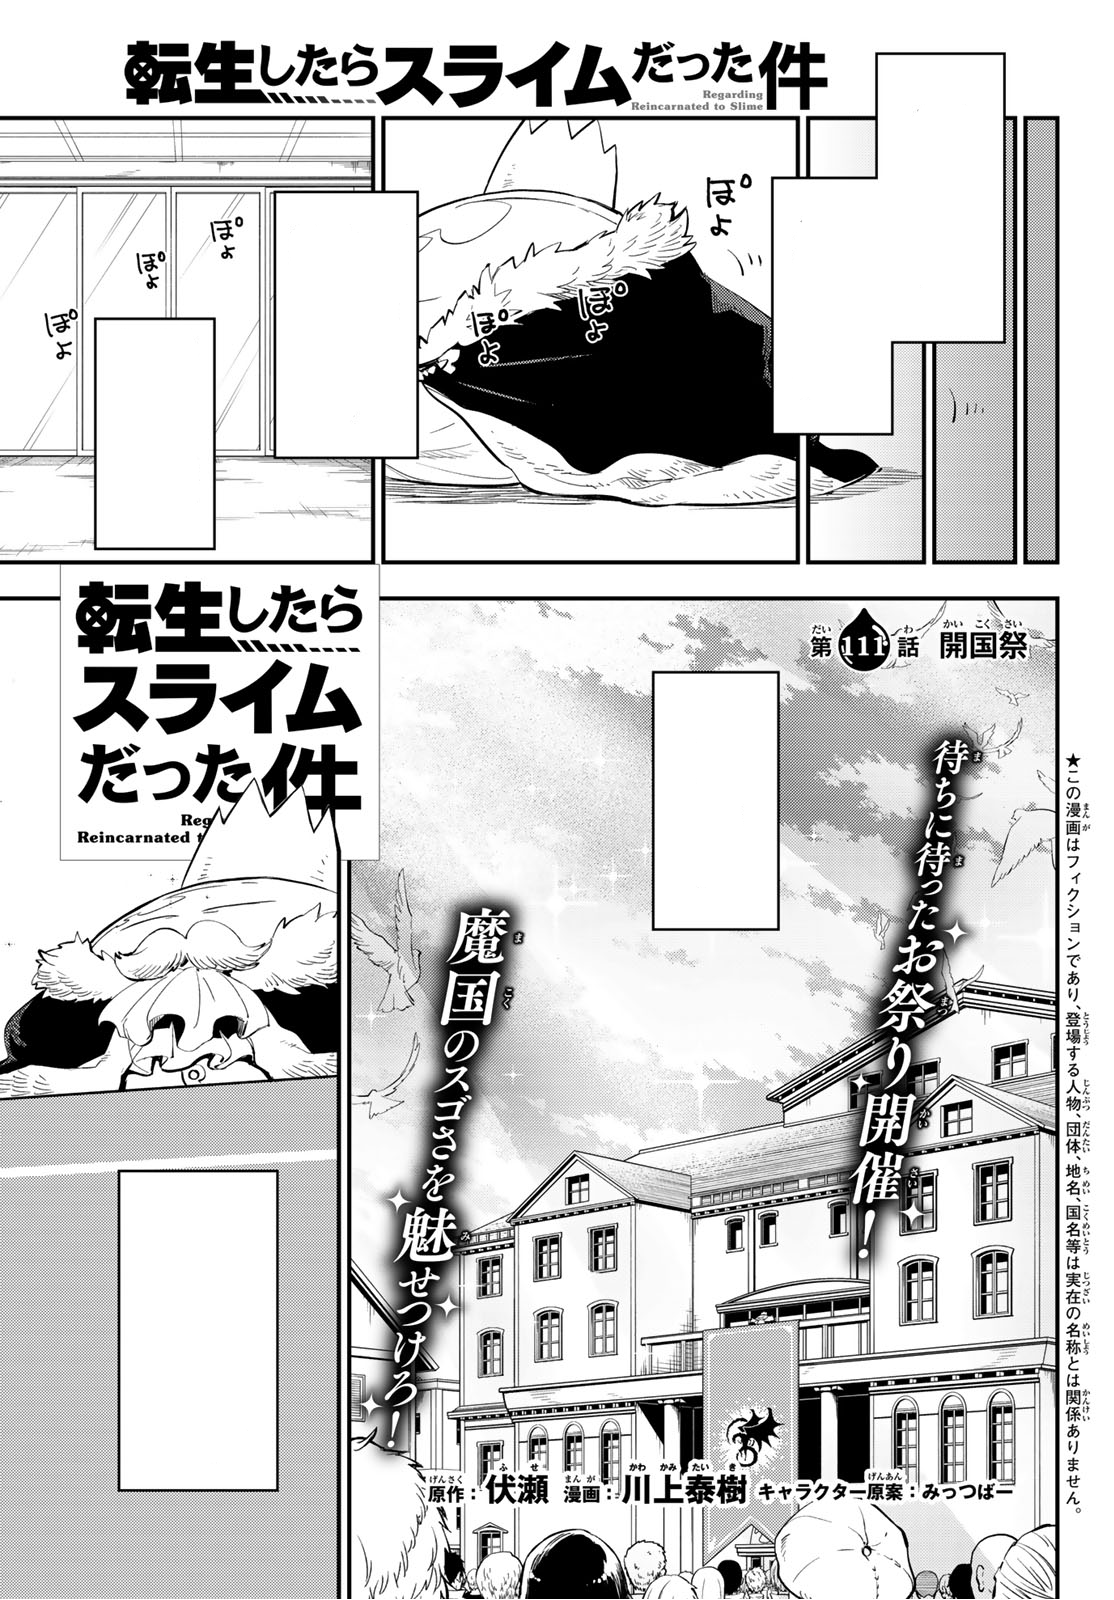 Tensei Shitara Slime Datta Ken, Chapter 111 - Tensei Shitara Slime Datta Ken  Manga Online